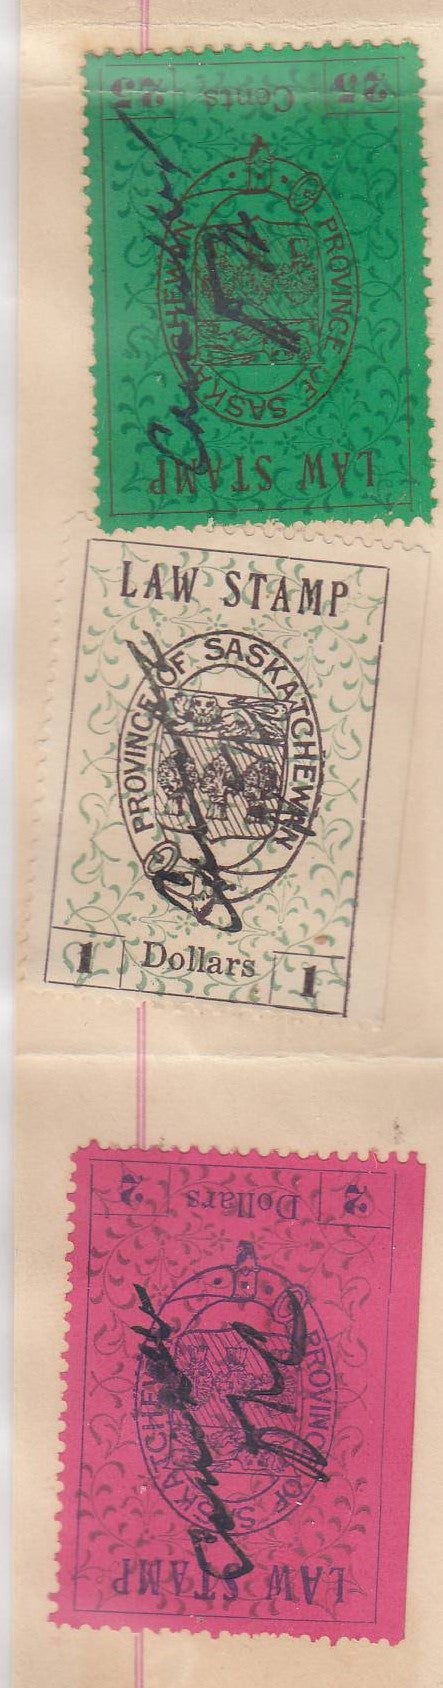 0004SL2201 - SL4 - Saskatchewan Document